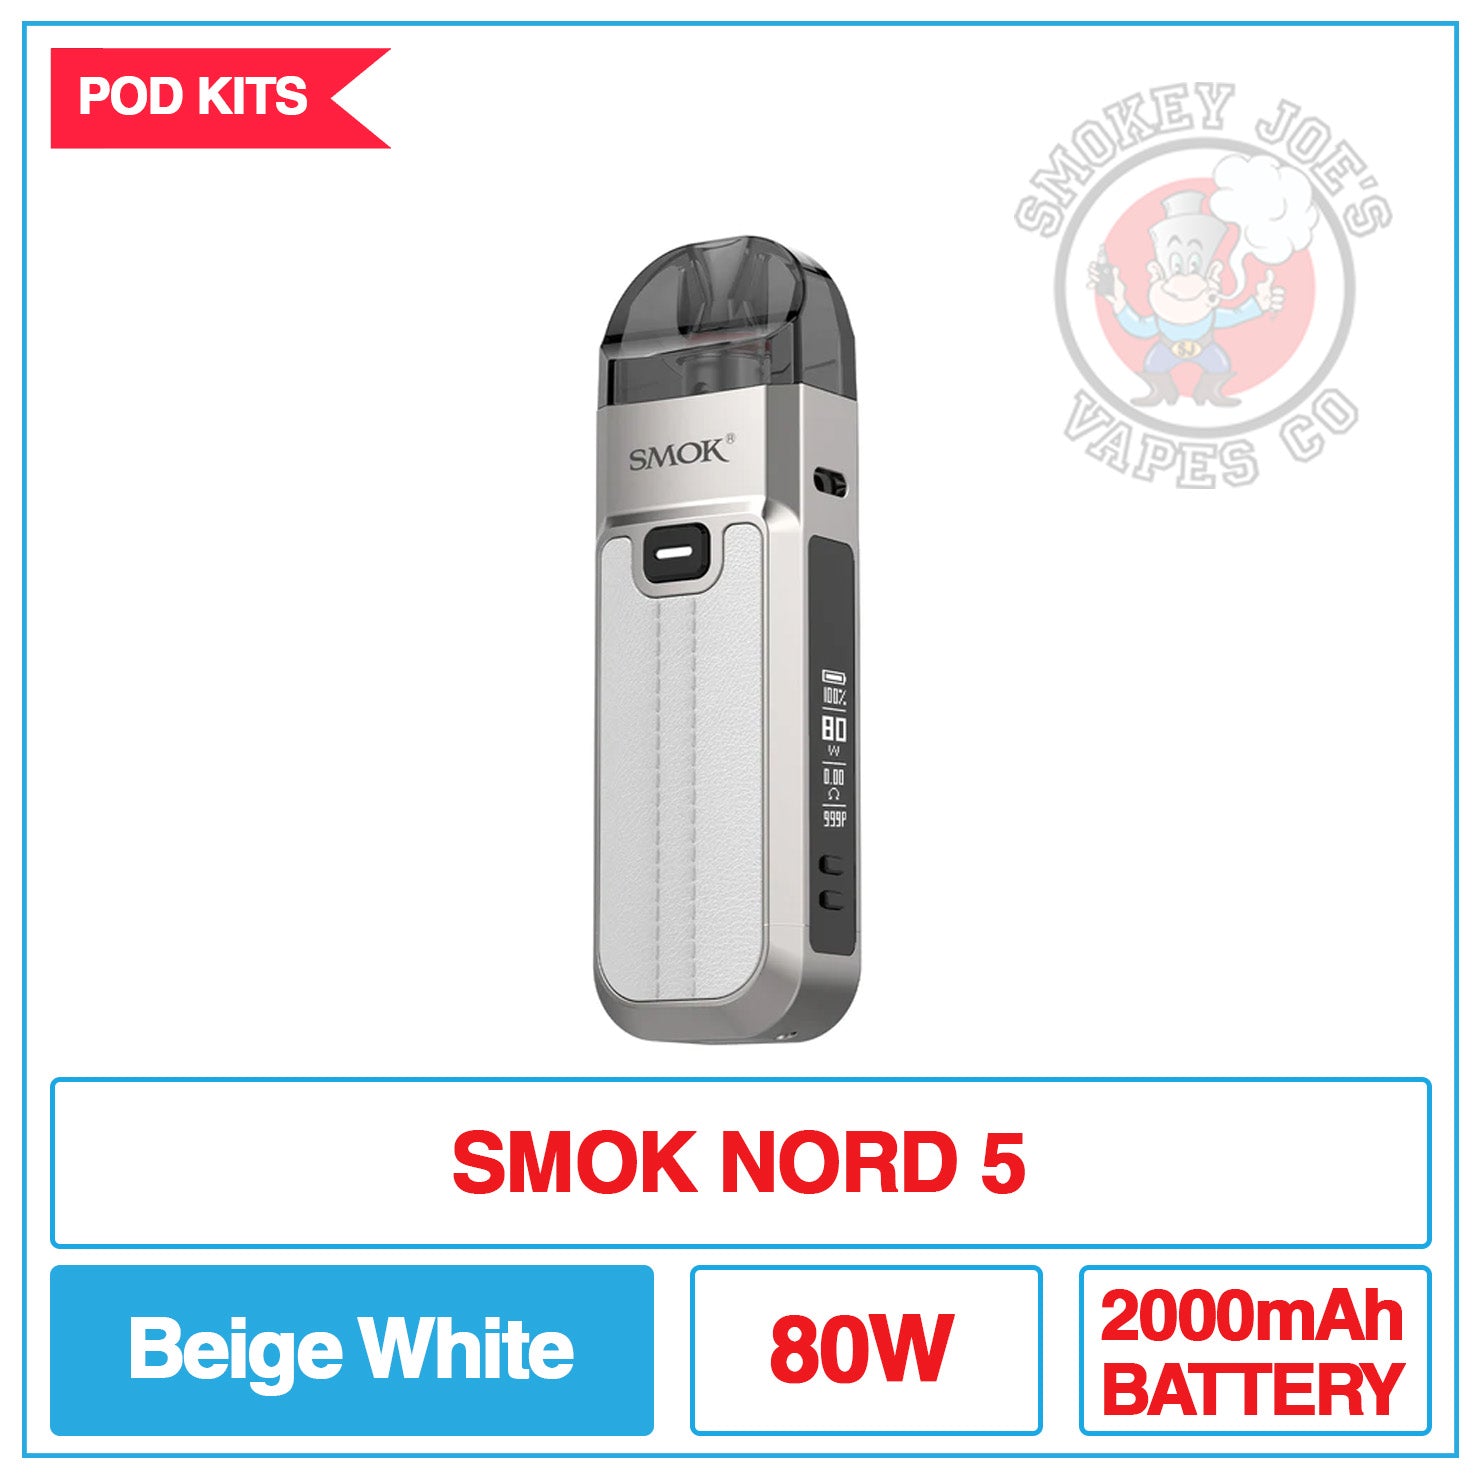 SMOK Nord 5 80W Pod Kit